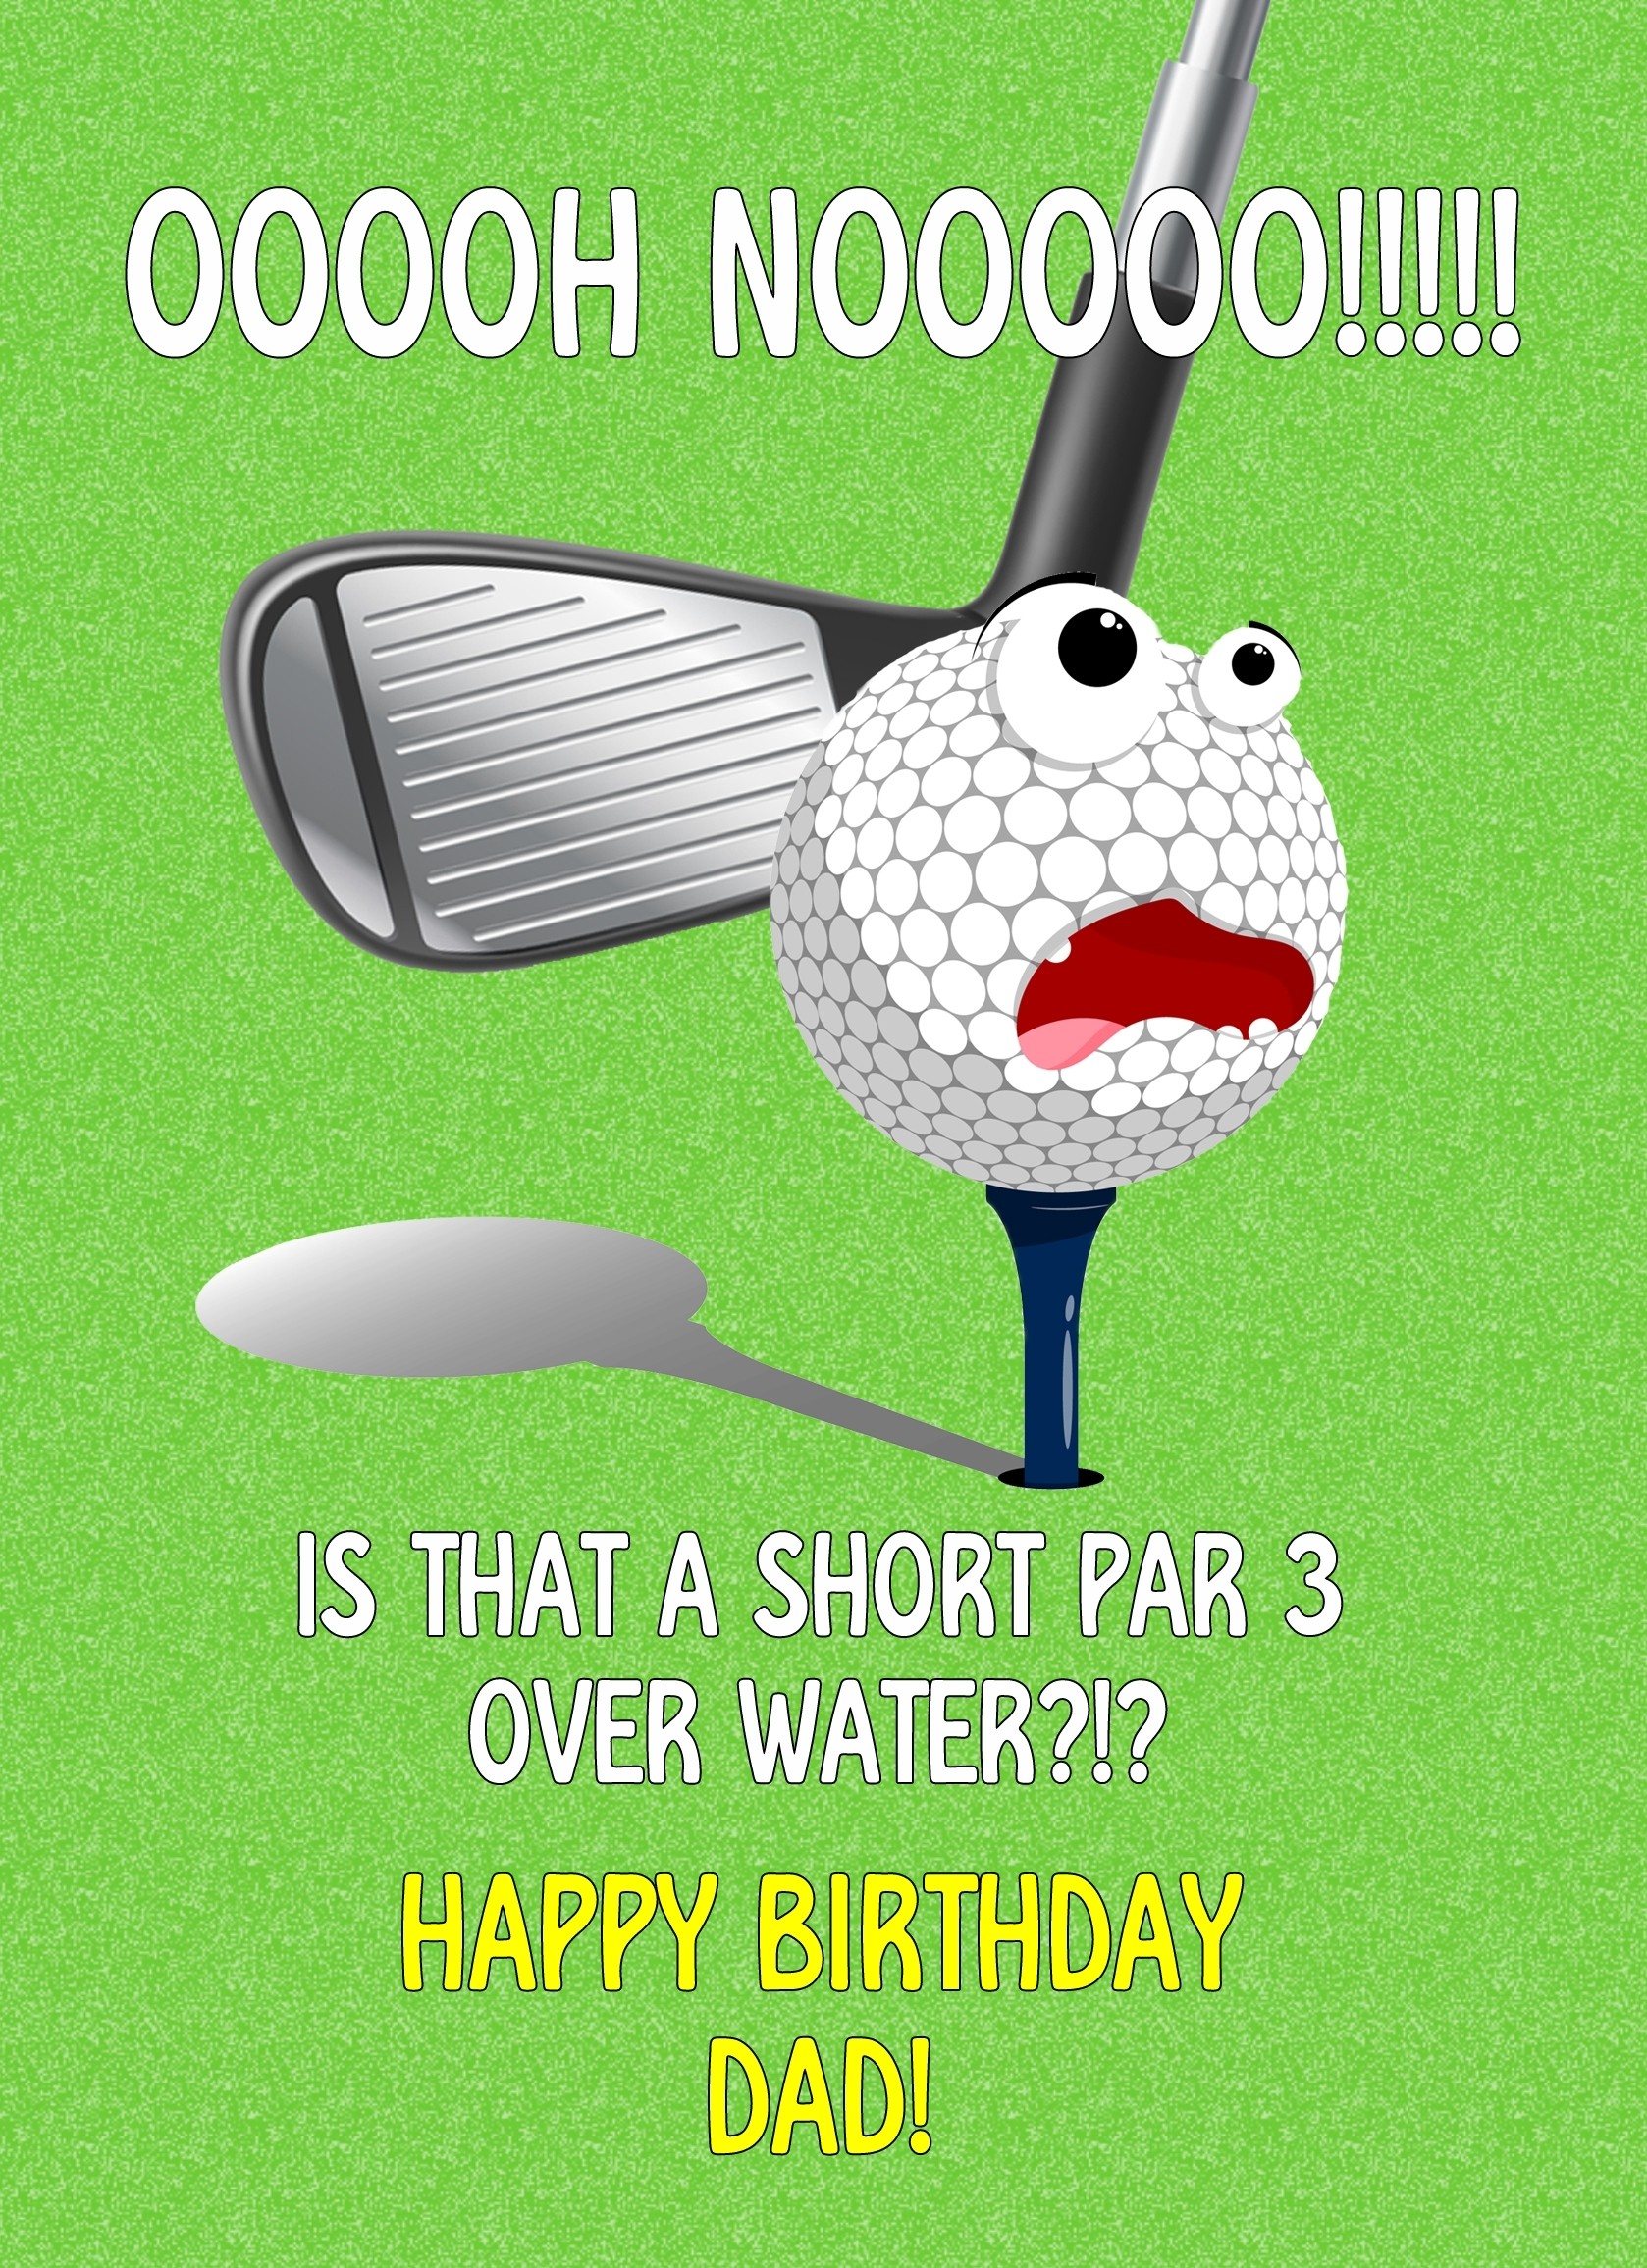 Funny Golf Birthday Card for Dad